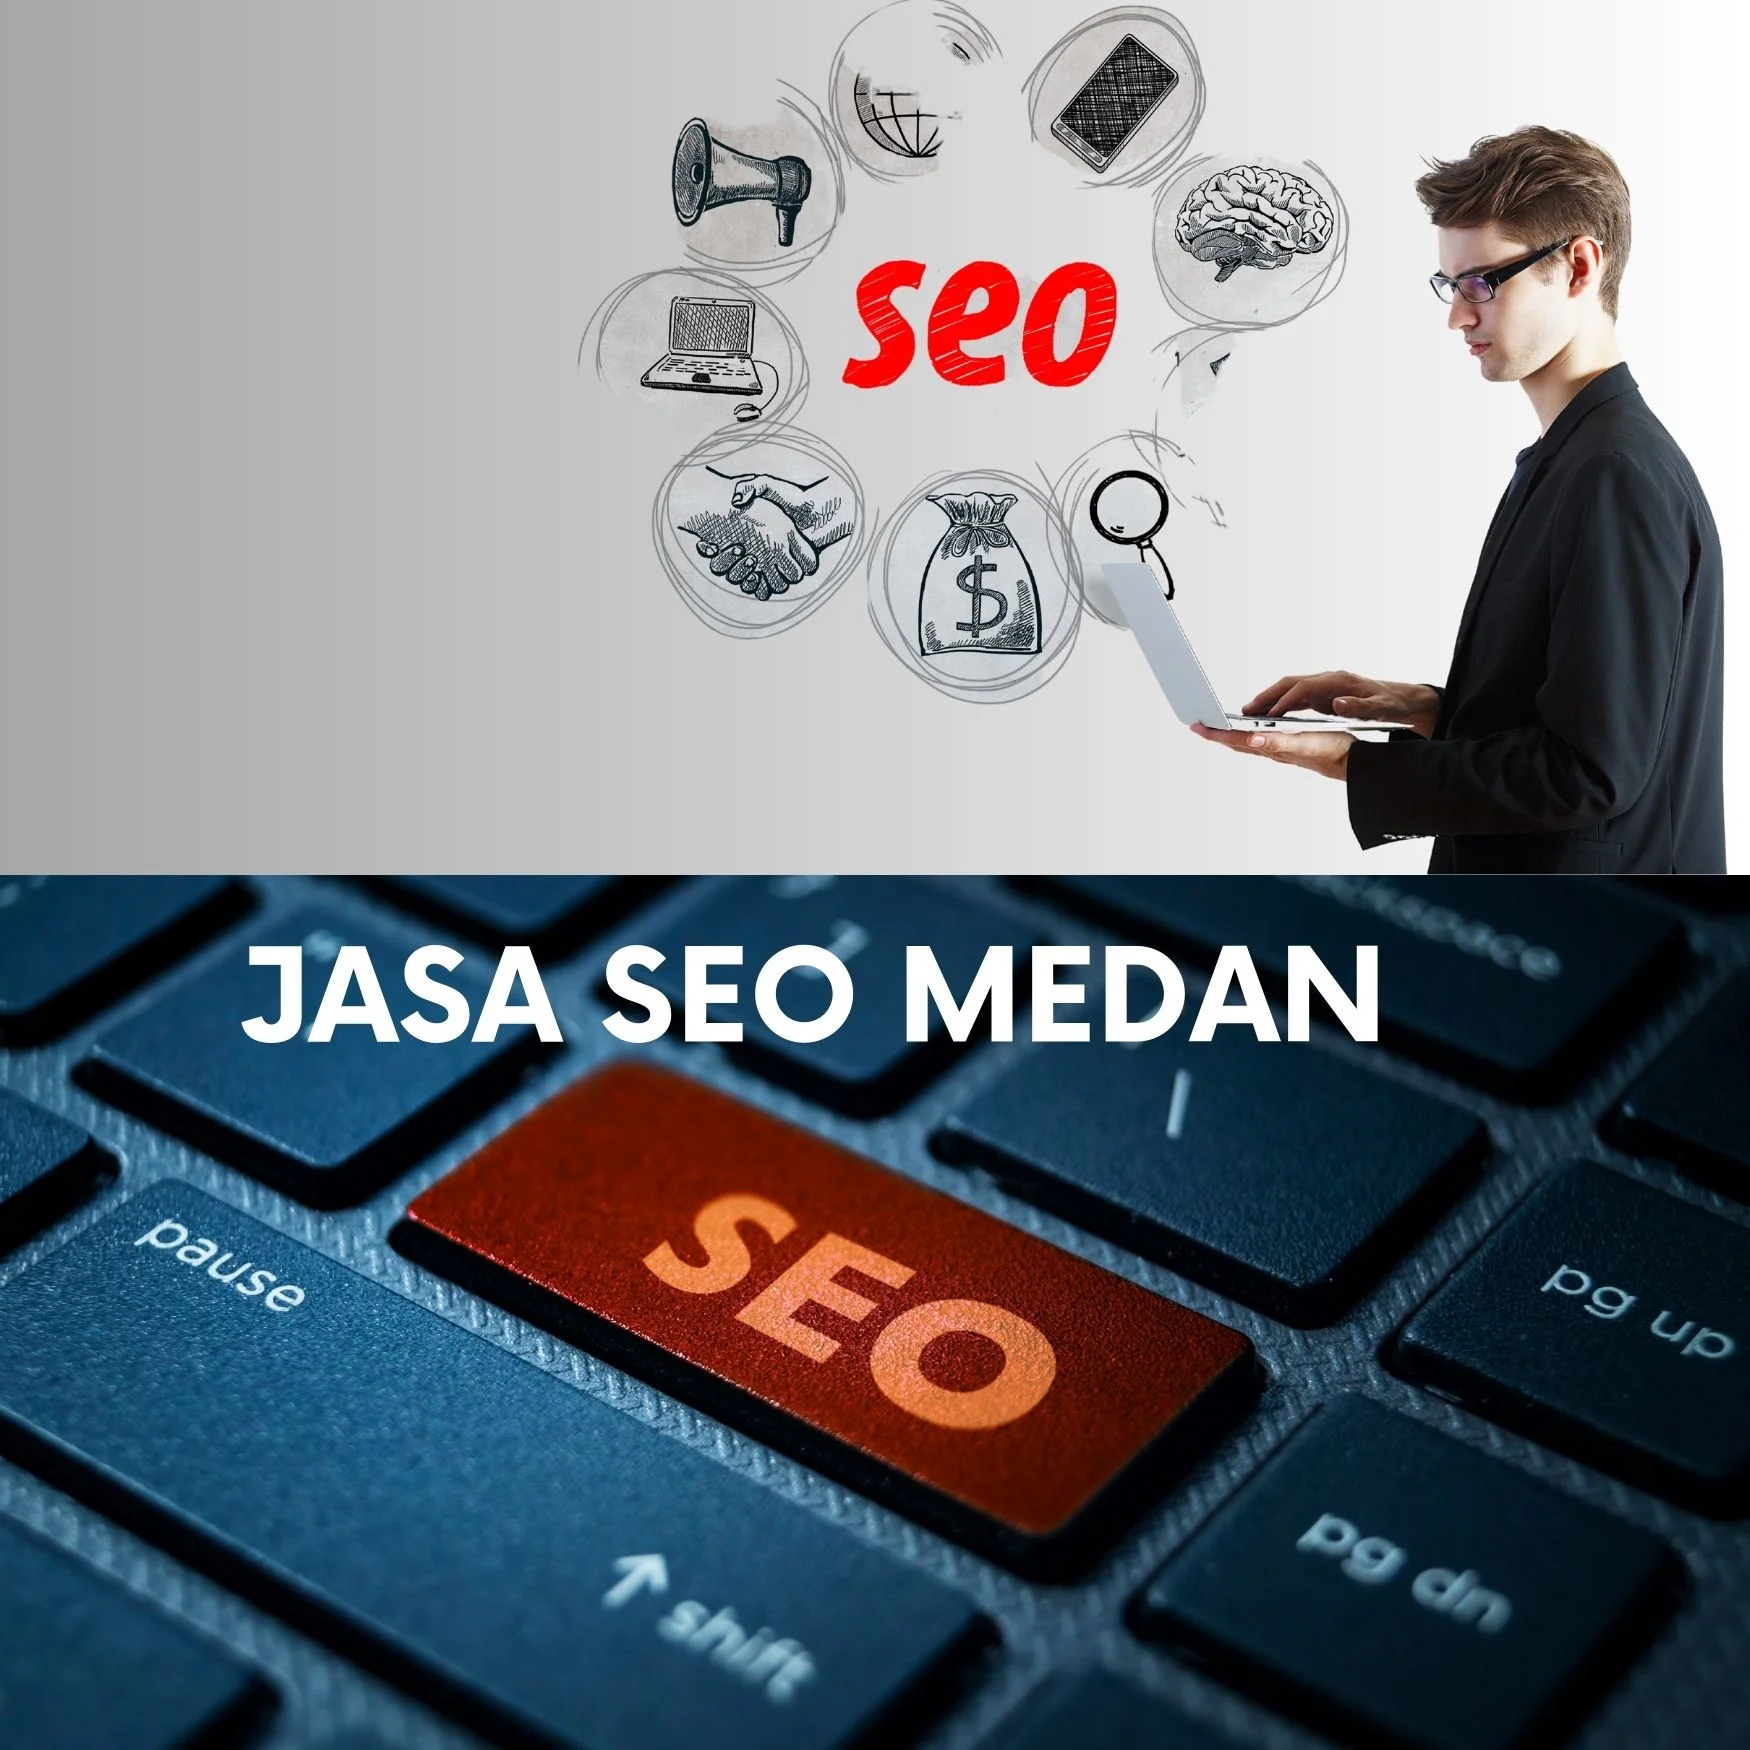 Jasa Seo Medan